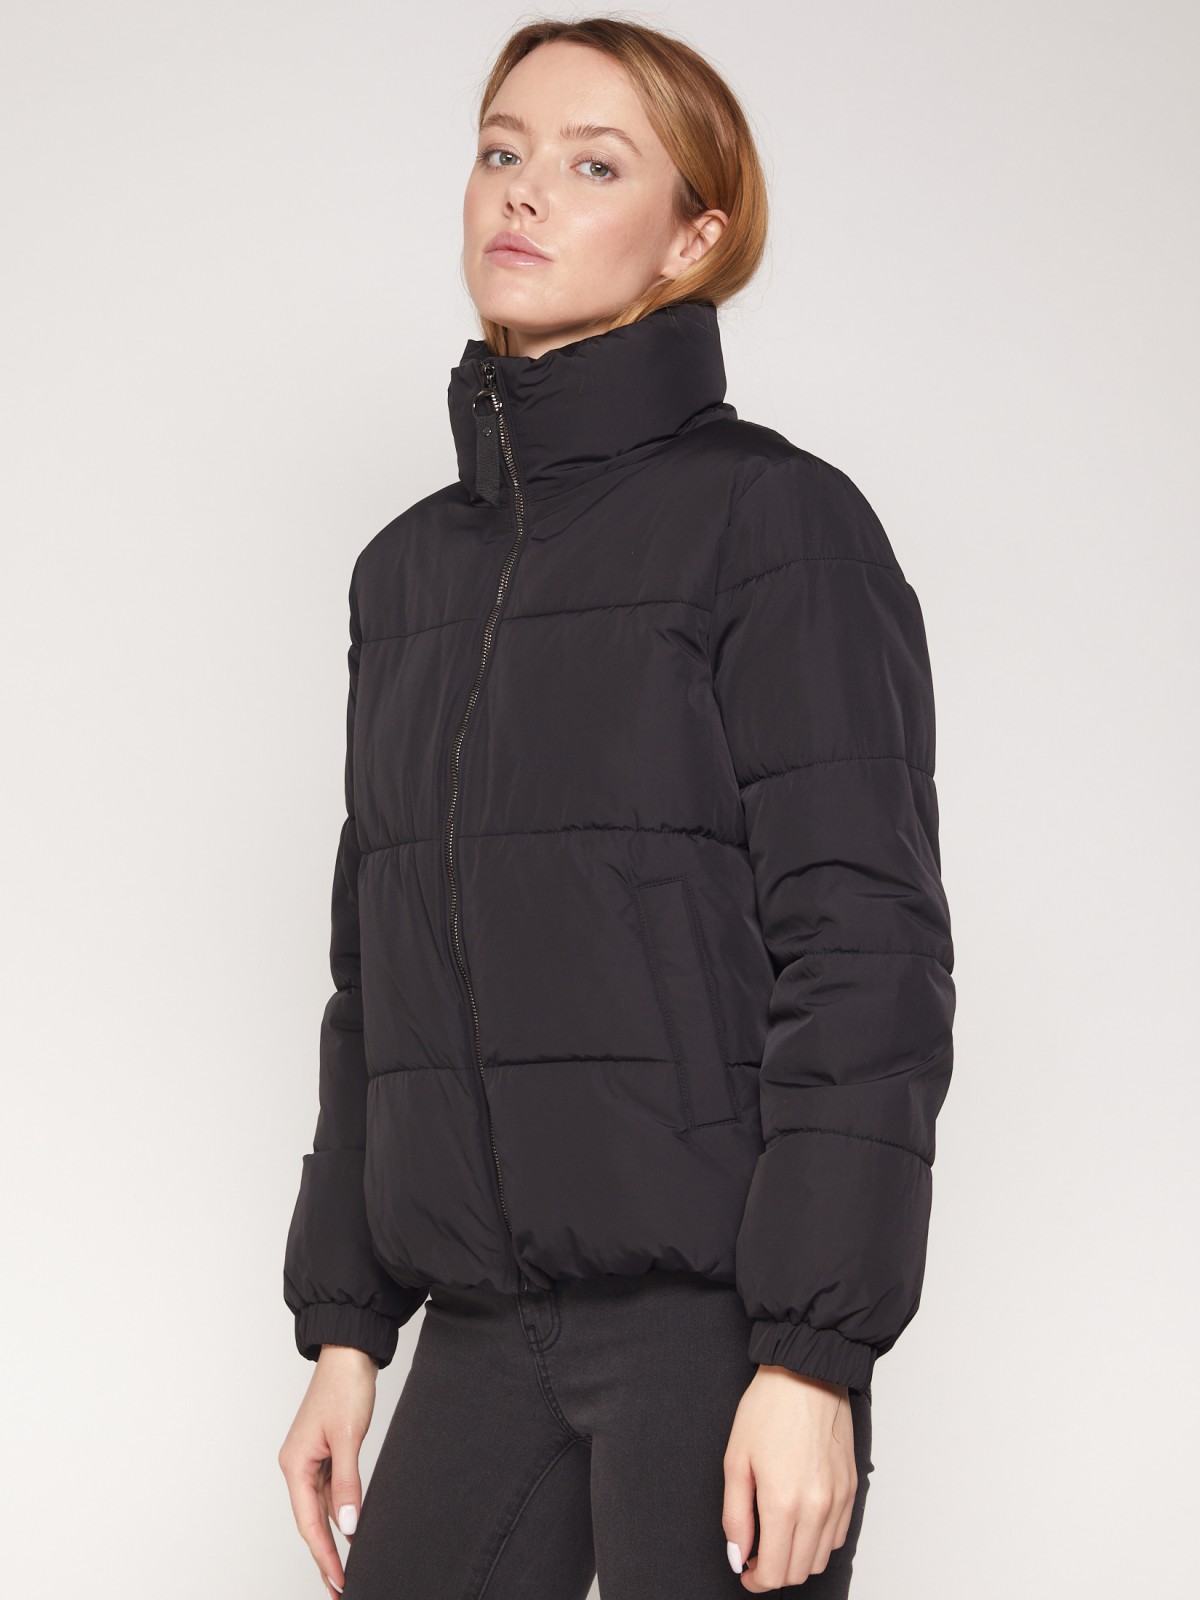 Тёплая куртка с высоким воротником-стойкой zolla 021335112034, цвет черный, размер XS - фото 2